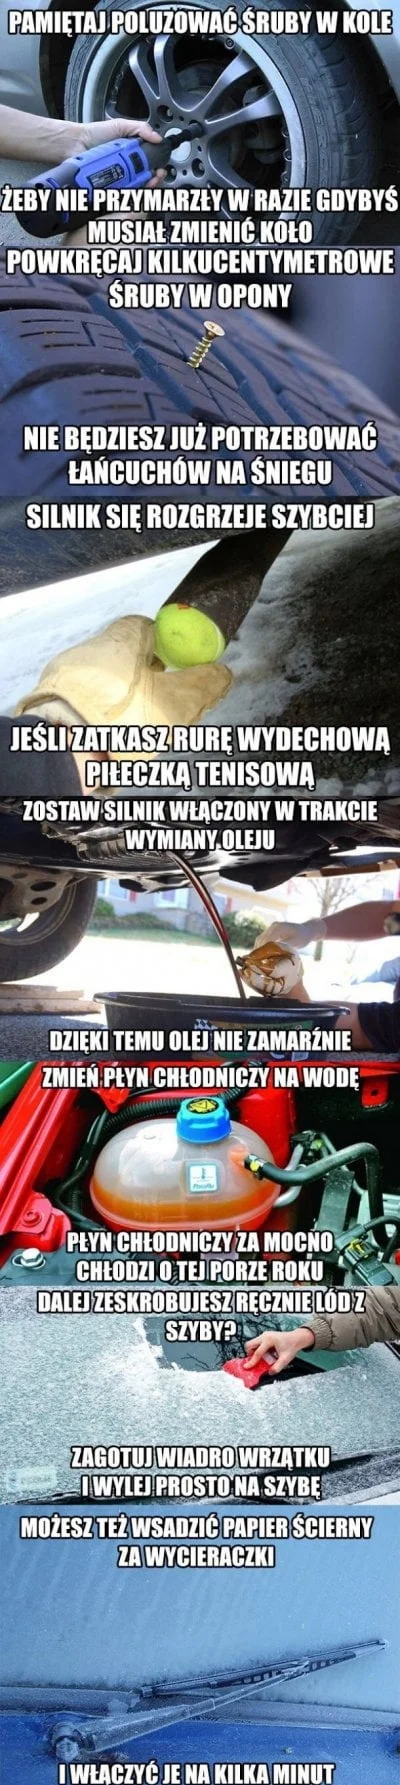 Pyszny_Wladek - Zima, także wiecie ( ͡° ͜ʖ ͡°)
#humorobrazkowy #heheszki